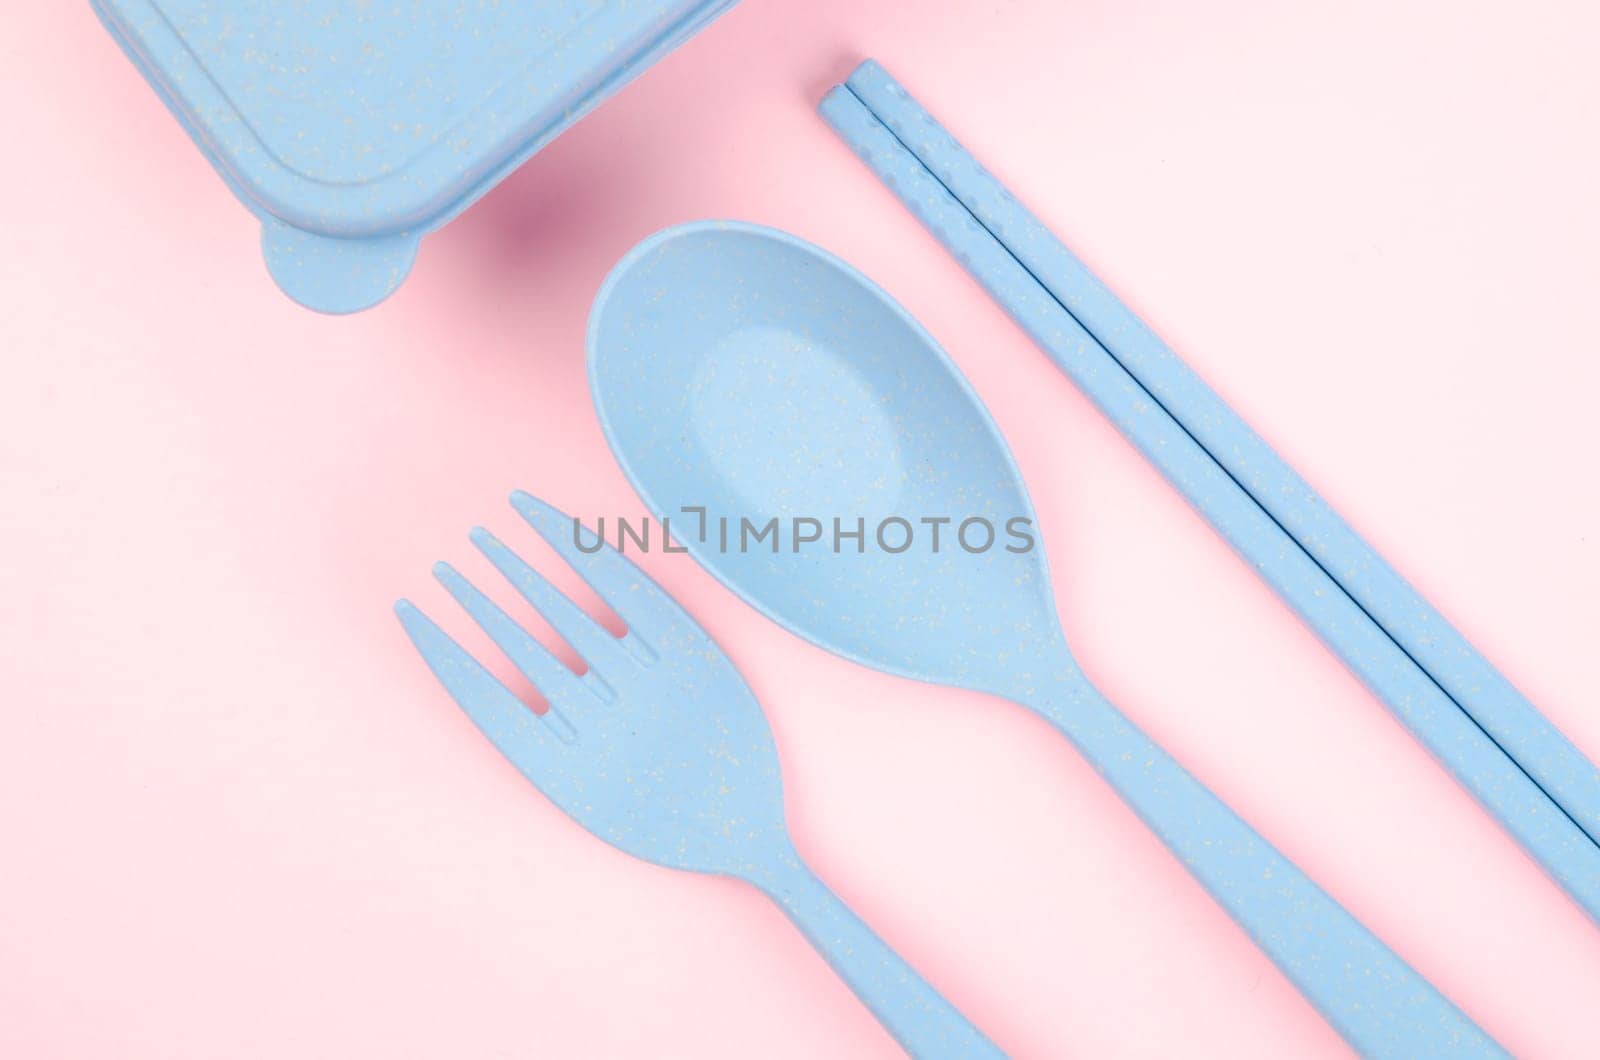 Blue Plastic spoons, forks and chopsticks set on pink color background.